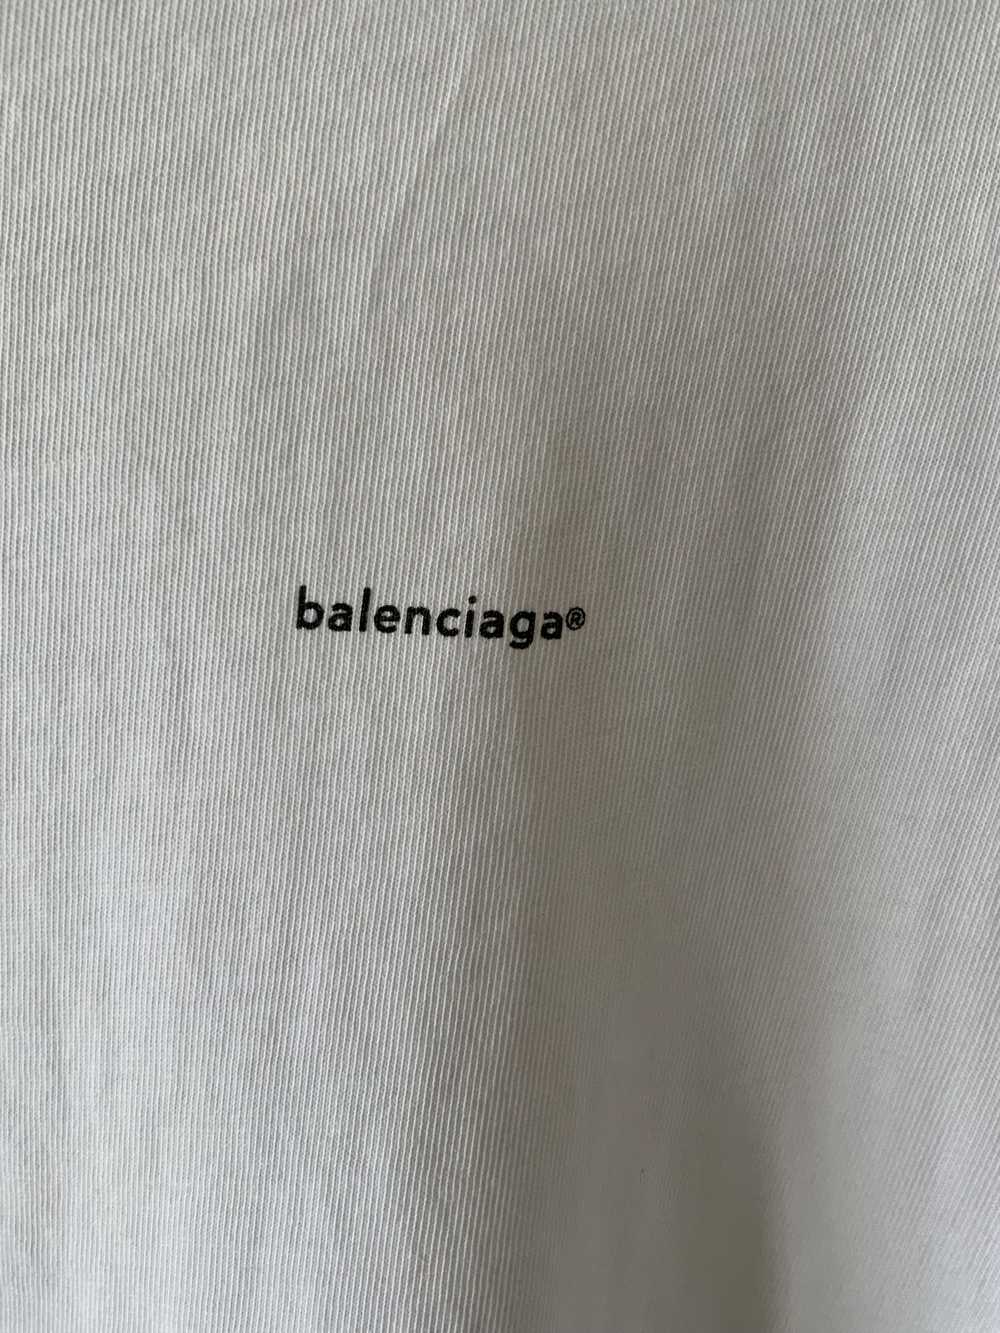 Balenciaga Balenciaga Small Copyright Logo T shirt - image 3